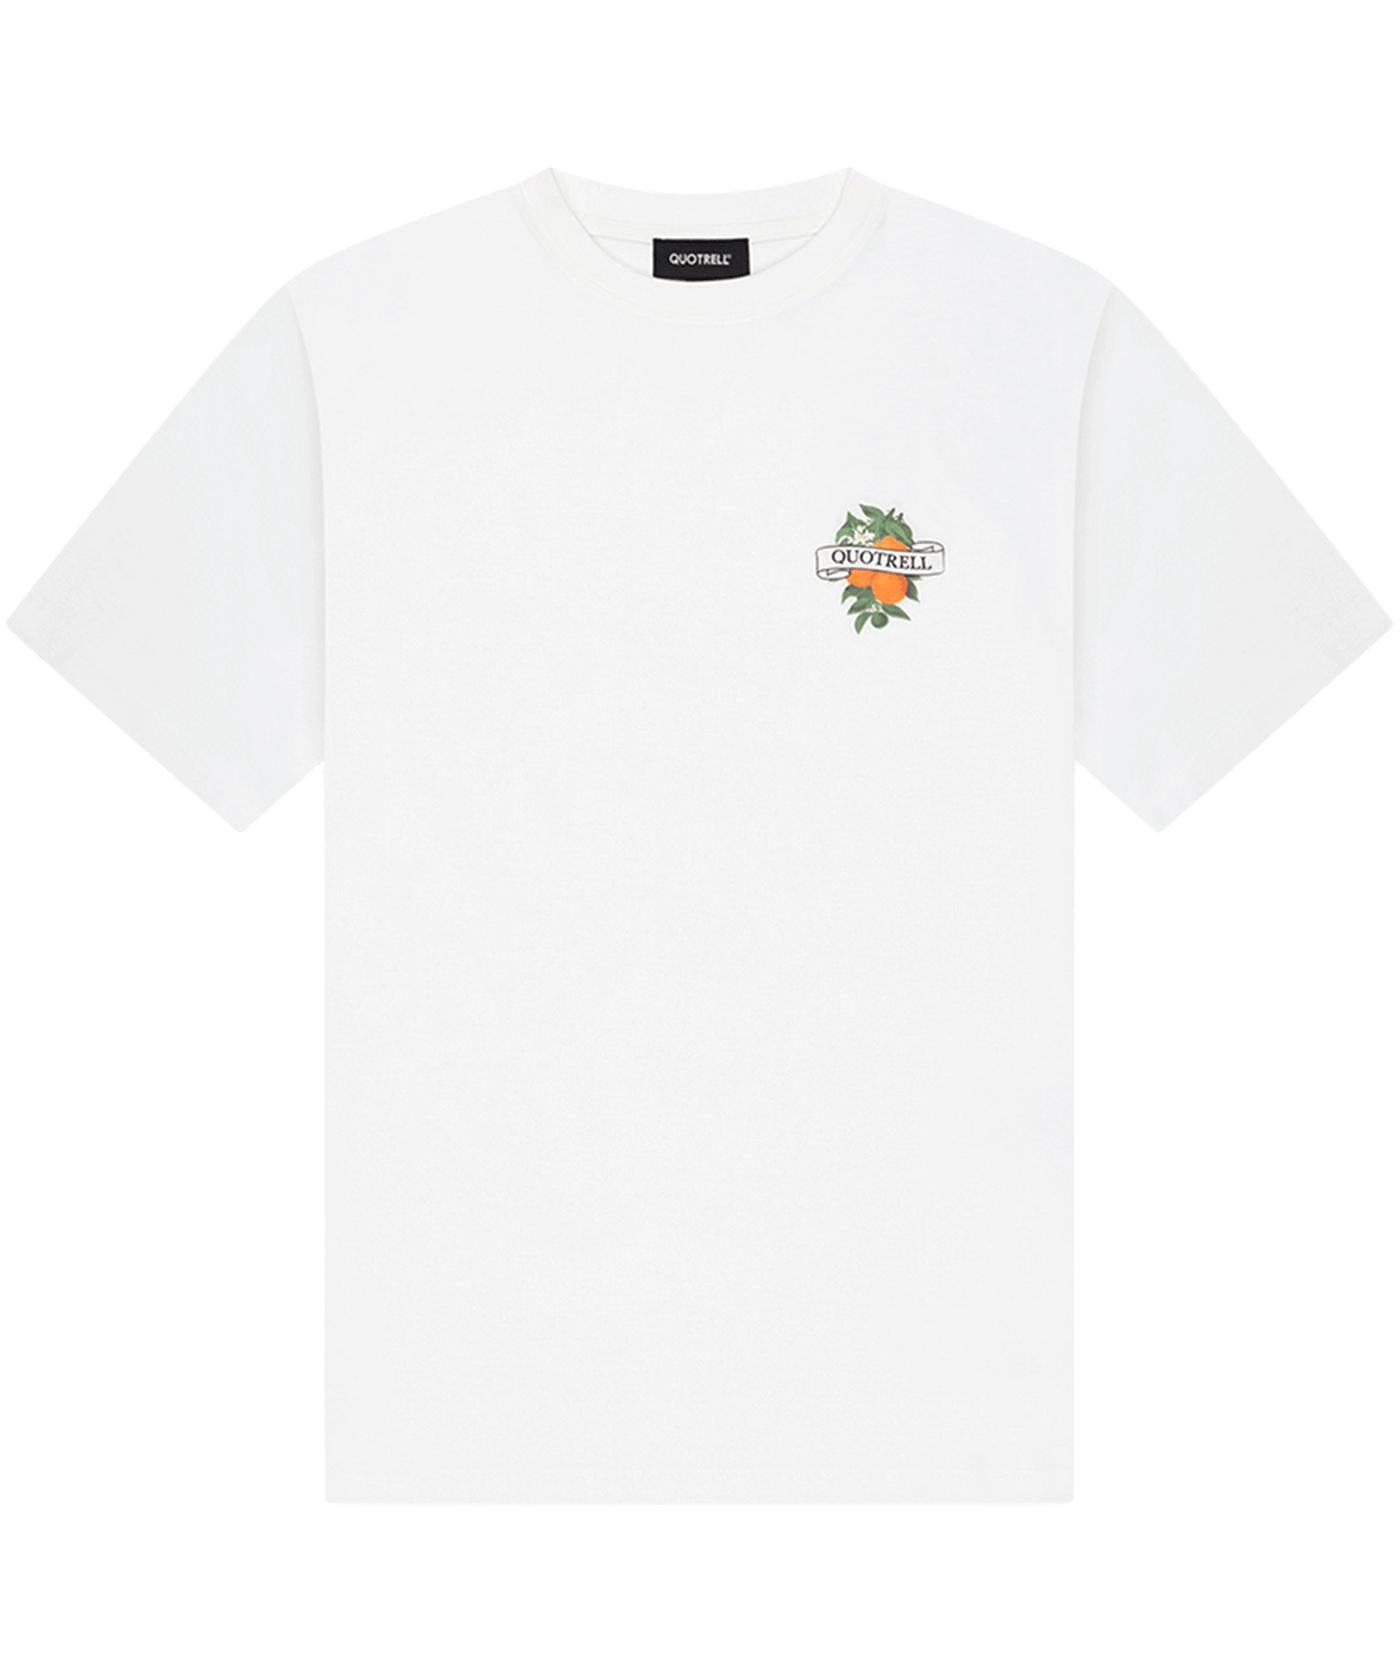 Quotrell - Mineola - T-shirt - White/black